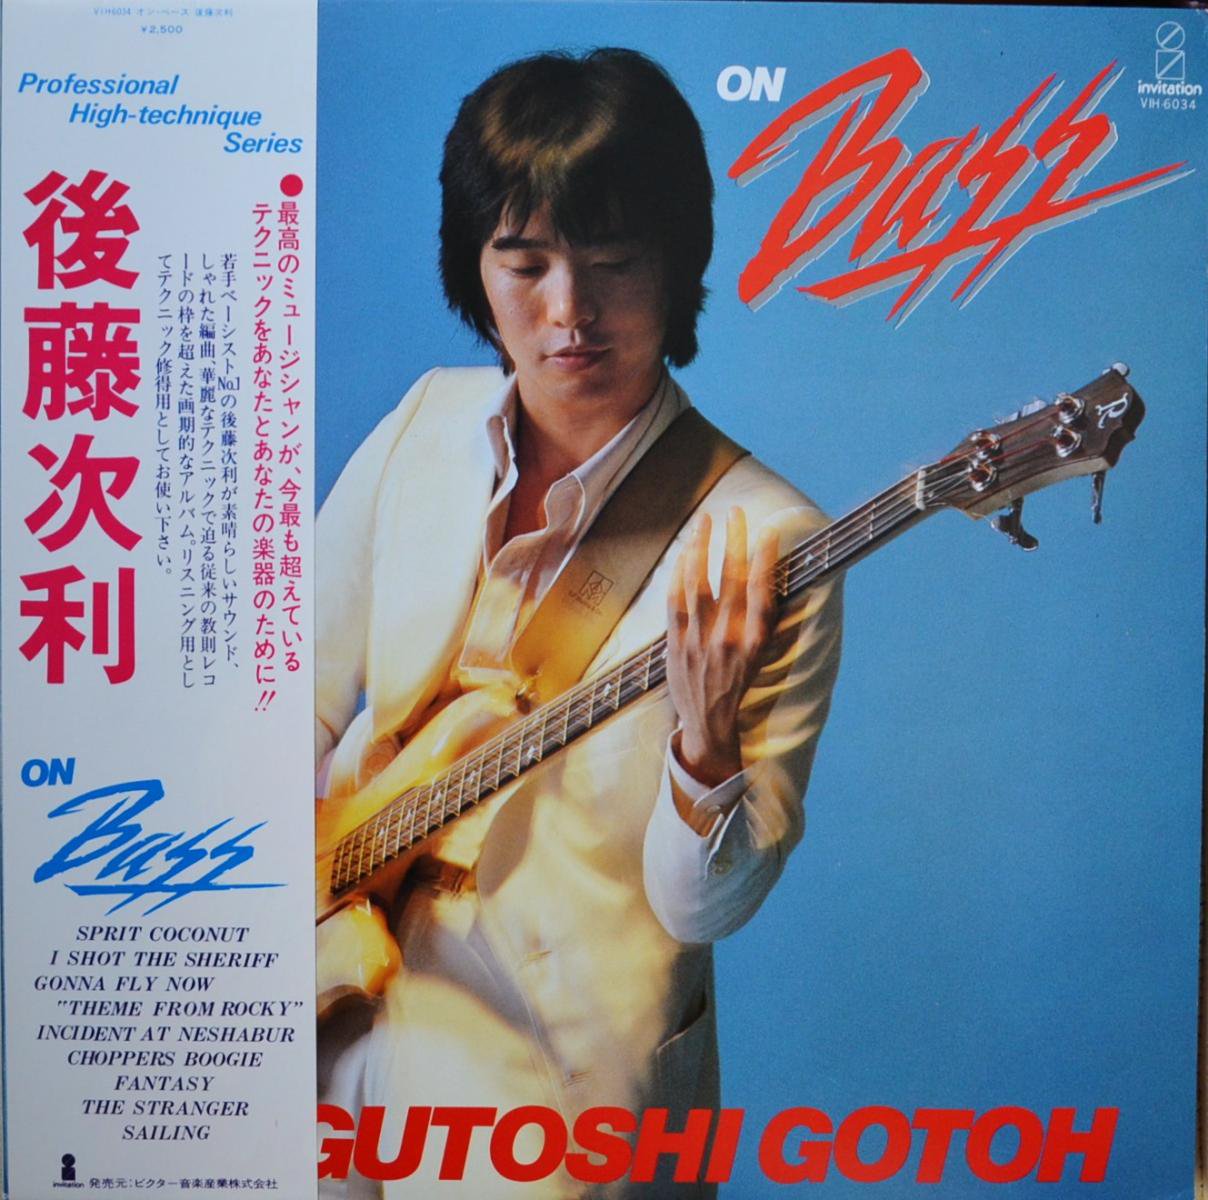 後藤次利 TSUGUTOSHI GOTOH / オン・ベース ON BASS (LP) - HIP TANK RECORDS